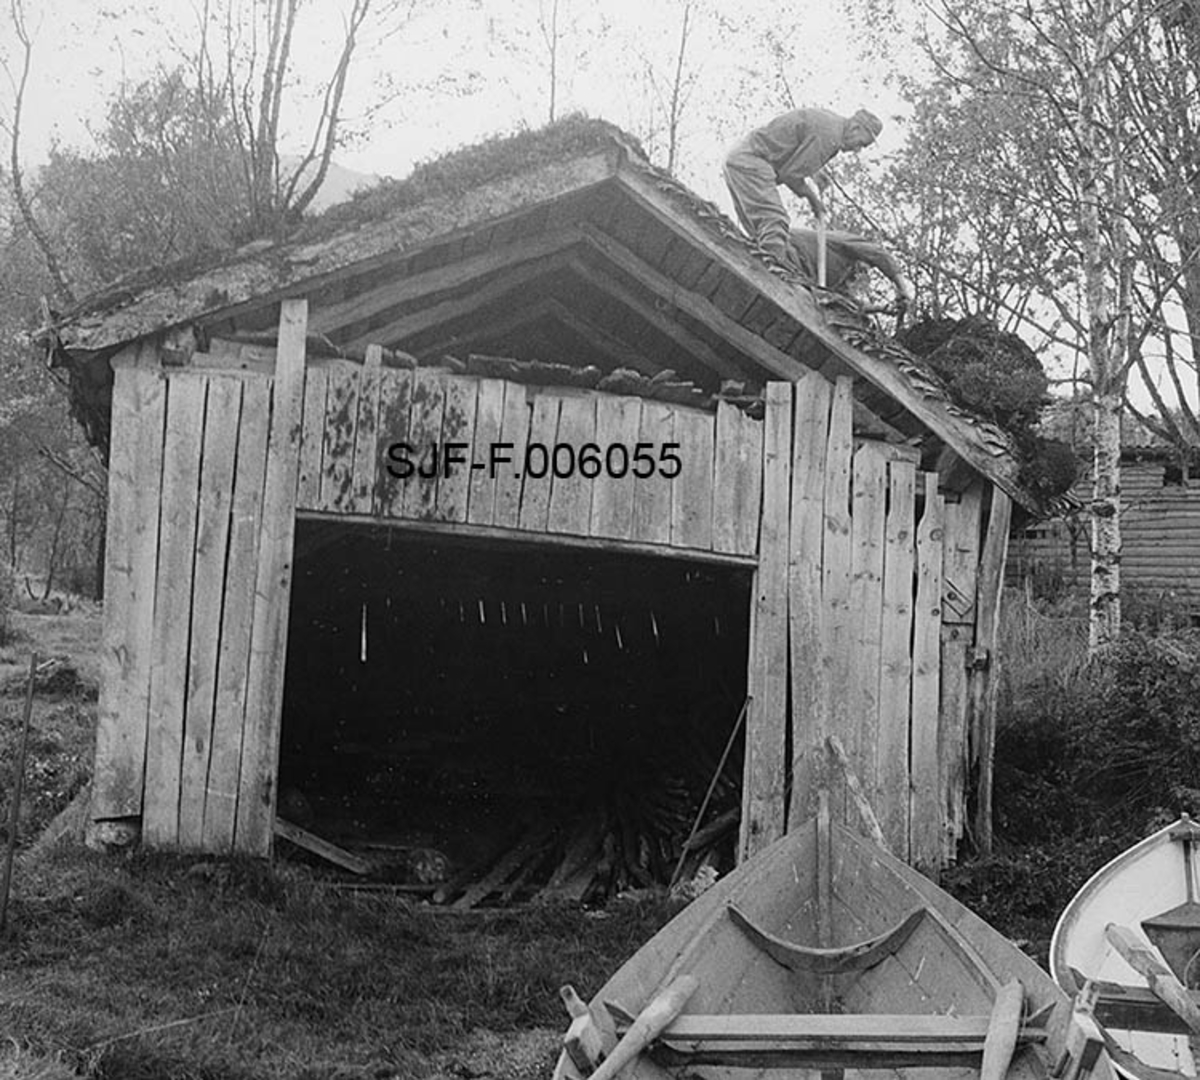 Naustet til Nikolai J. Gjesdal (1889-1973) ved Vassenden i Jølster i Sunnfjord i Sogn og Fjordane.  Fotografiet er tatt fra strandkanten ved Jølstervatnet (Jølstravatnet), mot en gavl med en stor, rektangulær åpning til å ta båter inn og ut av bygningen.  Naustet er en umalt, bordkledd stavkonstruksjon med torvtekt sperretak.  Gavlveggen som vender mot fotografen er bordkledd opp til beiten, men åpen i røstet.  På taket ser vi to karer (Karinus Loftet og Georg Løvhaugen) som var i ferd med å spa ned torvtekket, som også var vekstmasse.  Dette fotografiet ble tatt i 1968, like før man startet arbeidet med å demontere bygningen med sikte på flytting til Norsk Skogbruksmuseums friluftsamling på Prestøya i Elverum. 

Jølsternaustet er 790 centimeter langt og 456 centimeter bredt og har følgelig ei grunnflate på 36 kvadratmeter.  På gavlen mot vassdraget er rafthøyden 217 og mønehøyden 365 centimeter.  På den bakre eller vestre gavlen er rafthøyden 125 og mønehøyden 258 centimeter. 